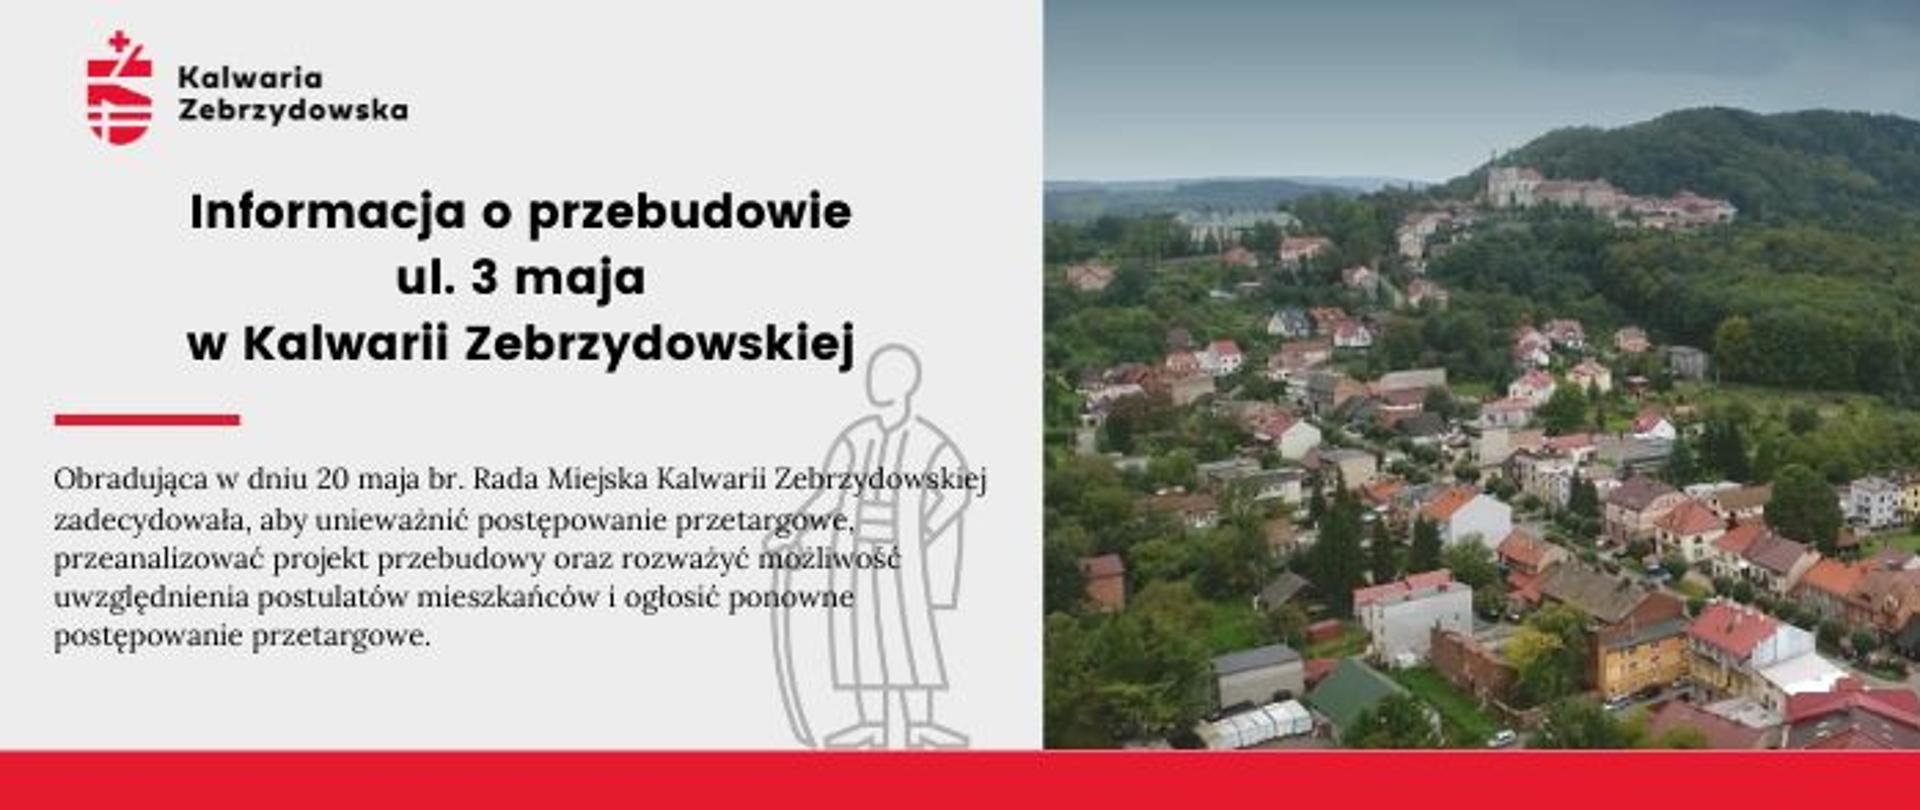 Plansza informacyjna po lewej tekst - Informacja o przebudowie ul. 3 maja w Kalwarii Zebrzydowskiej. Po prawej widok na Kalwarię Zebrzydowską i Klasztor. 